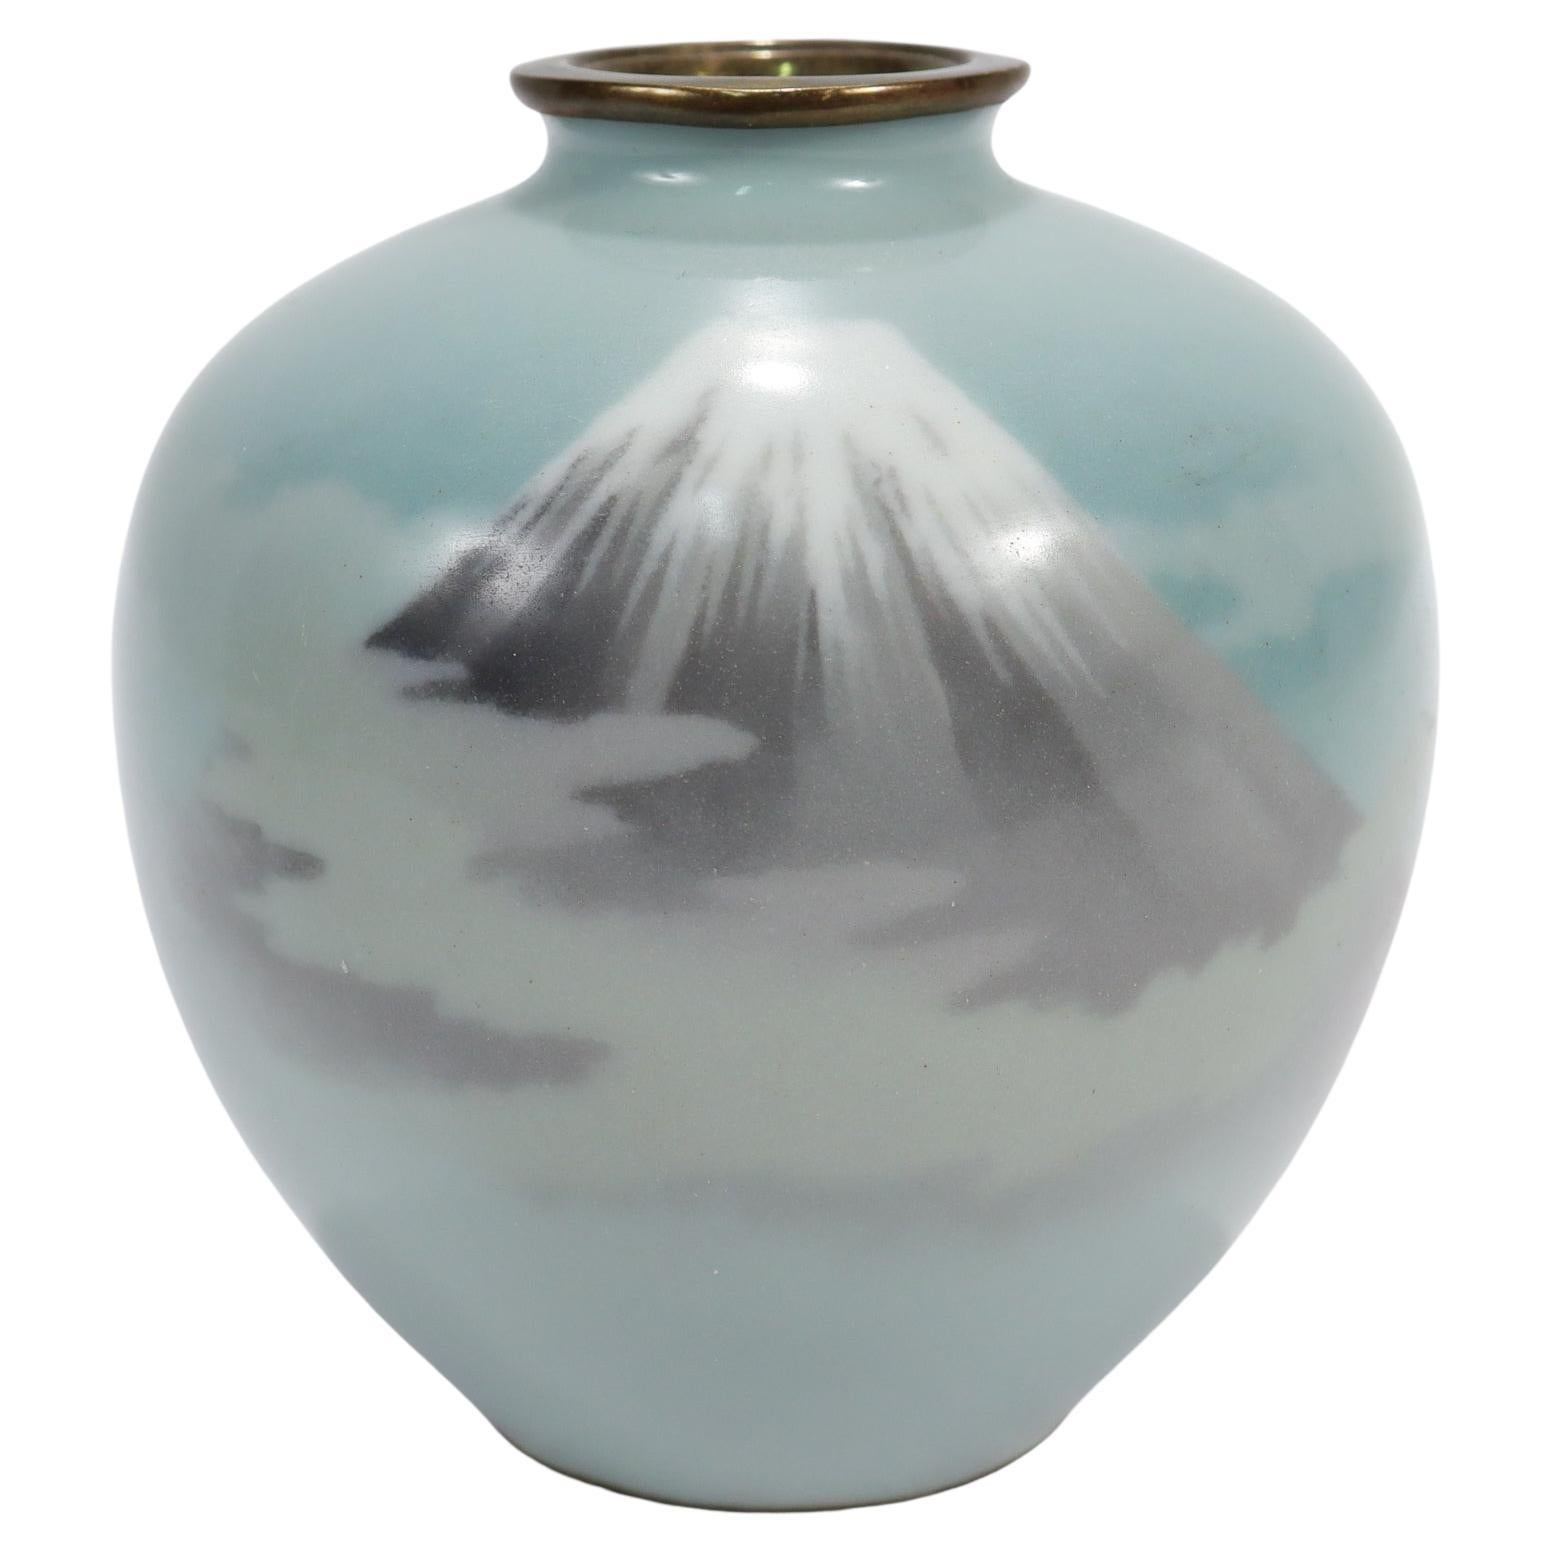 Old or Antique Diminutive Japanese Wireless Cloisonne Enamel Vase of Mt Fuji For Sale